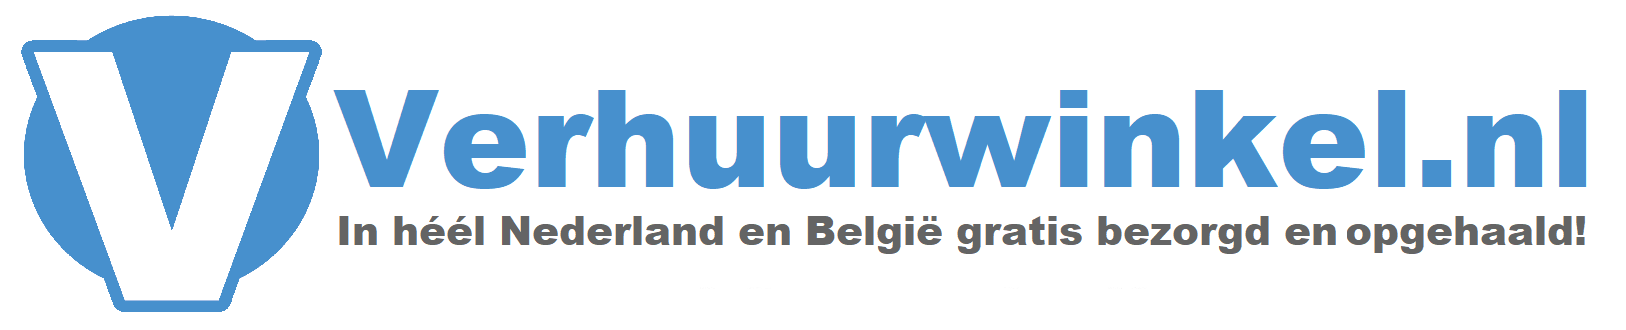 Verhuurwinkel.nl B.V. Logo